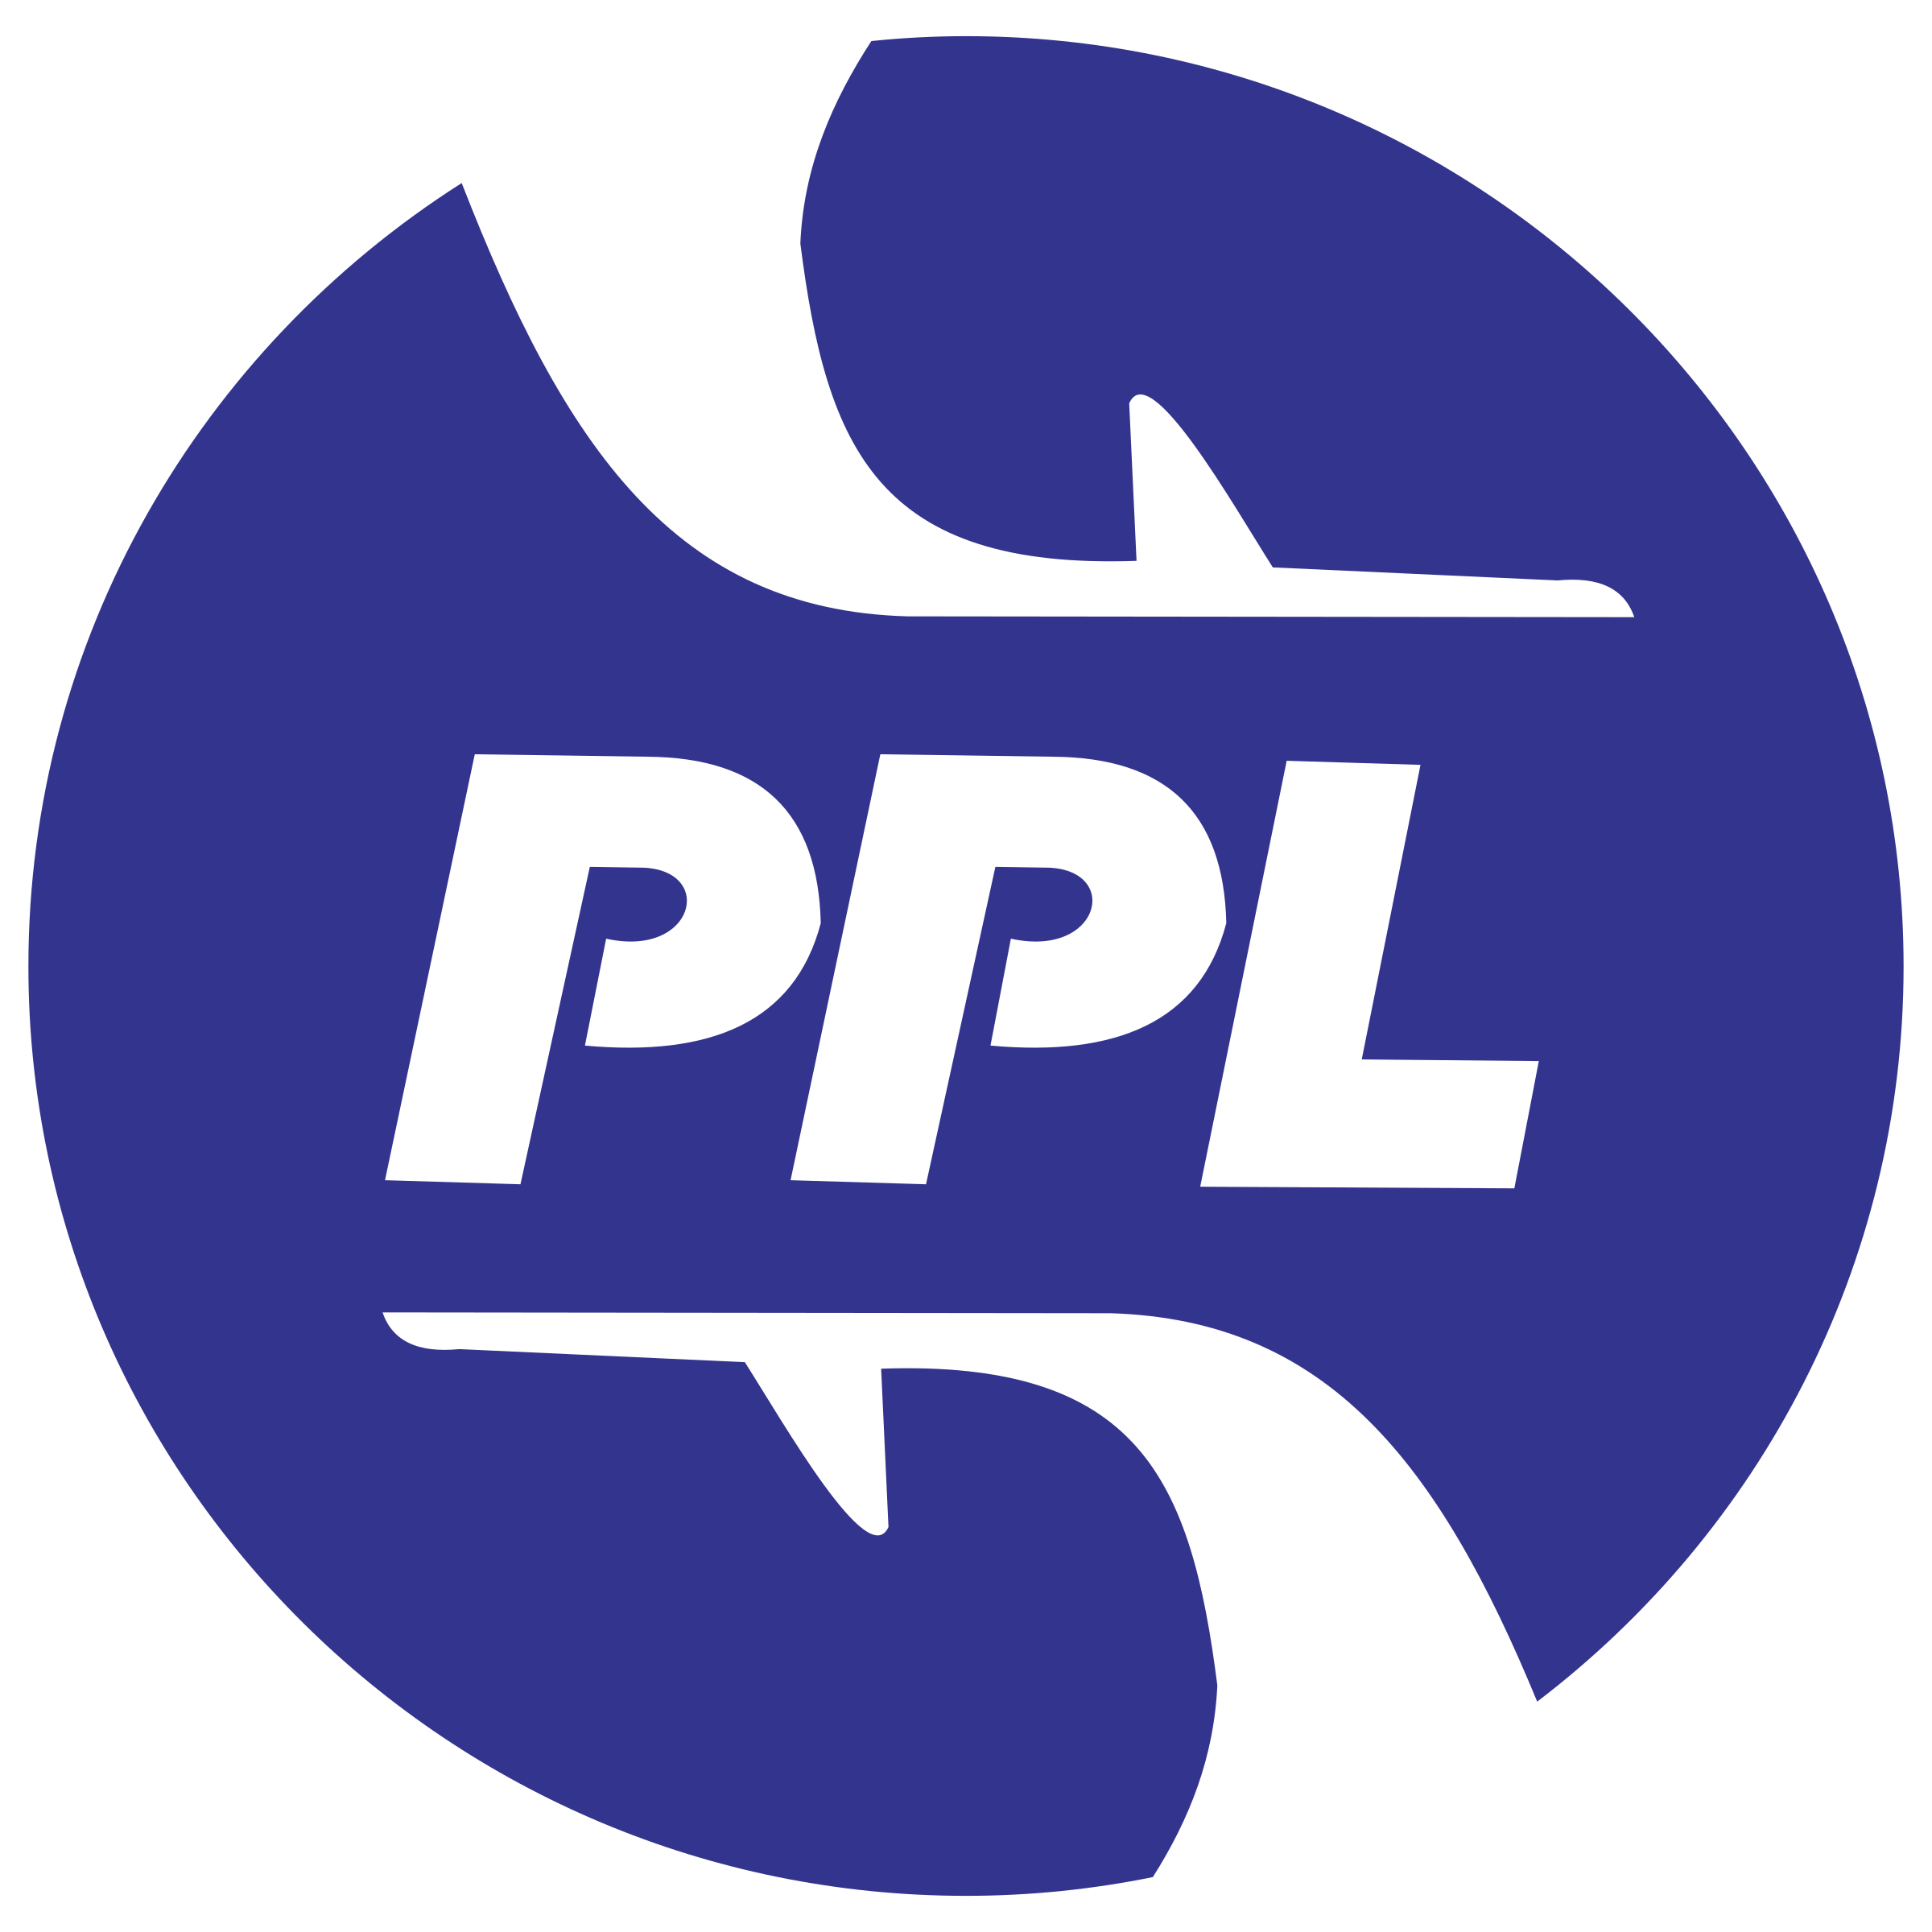 PPL Logo - PPL Logo PNG Transparent & SVG Vector - Freebie Supply